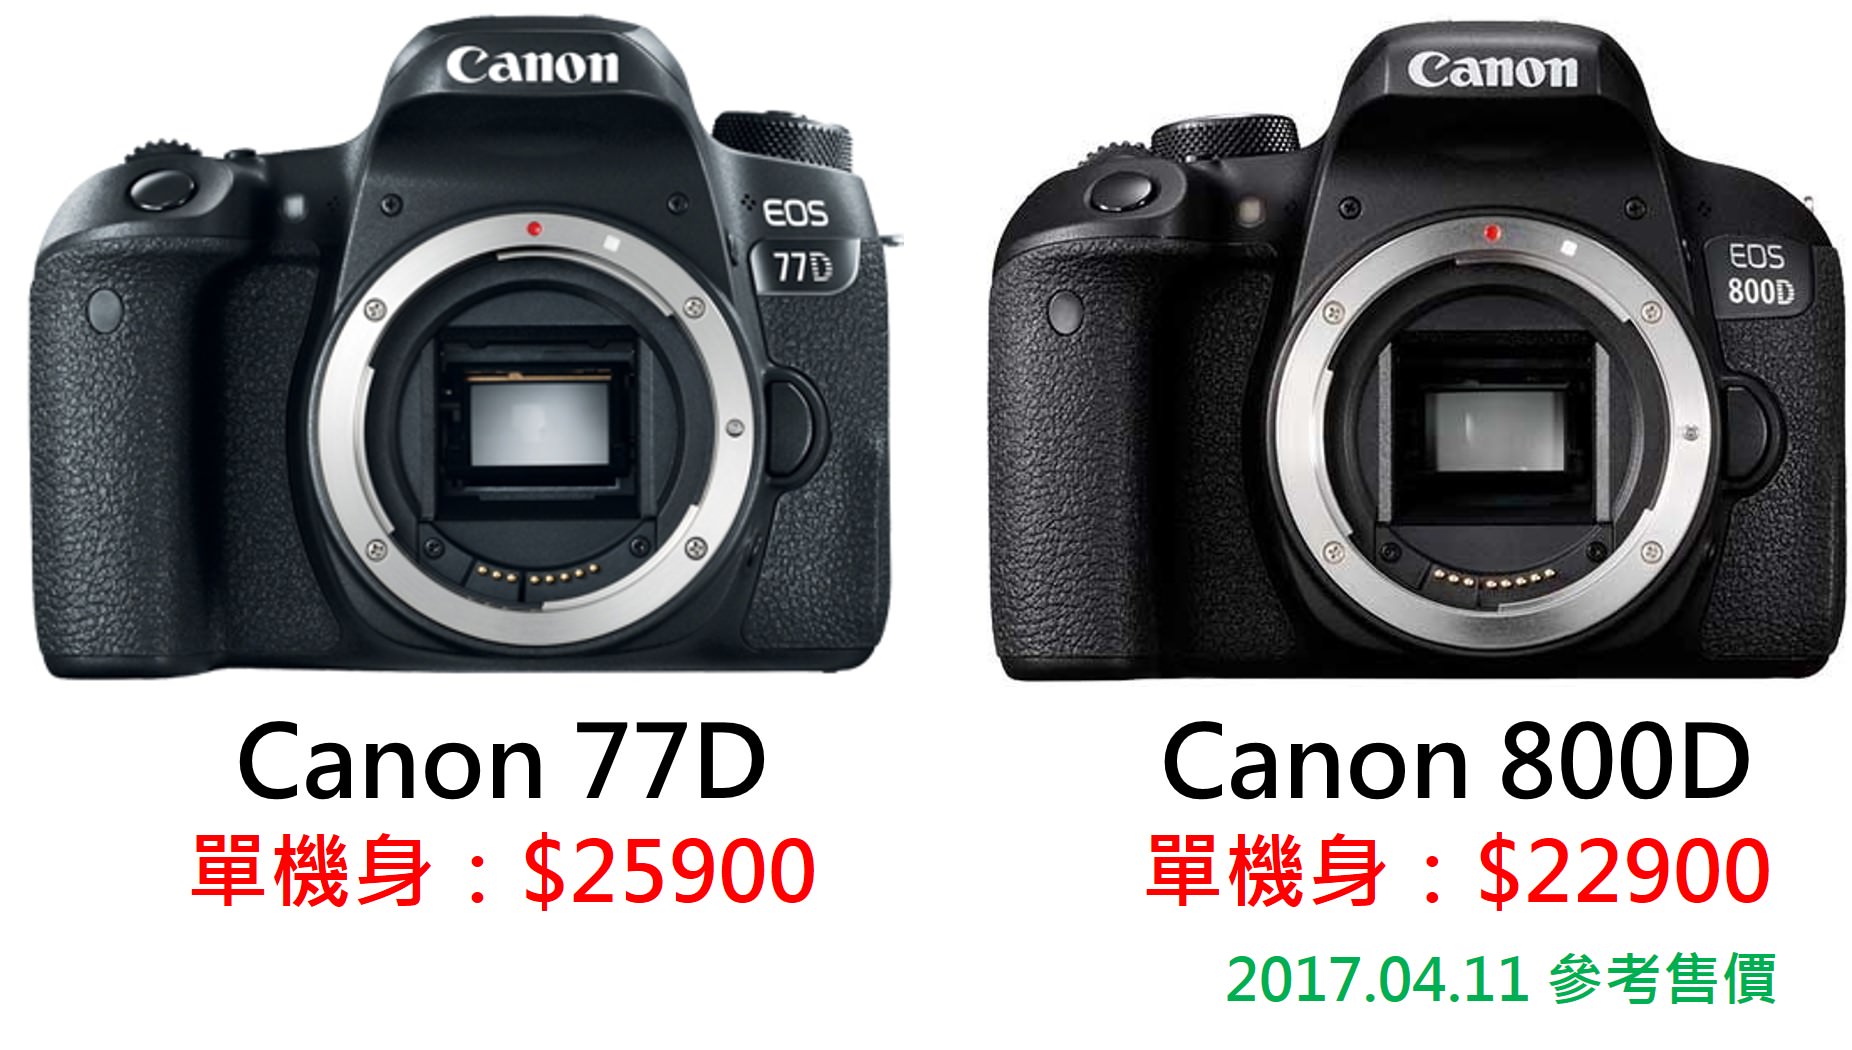 [聊攝影183] Canon 80D 與 77D 的差別? Canon 新機 80D / 77D / 800D 採買指南